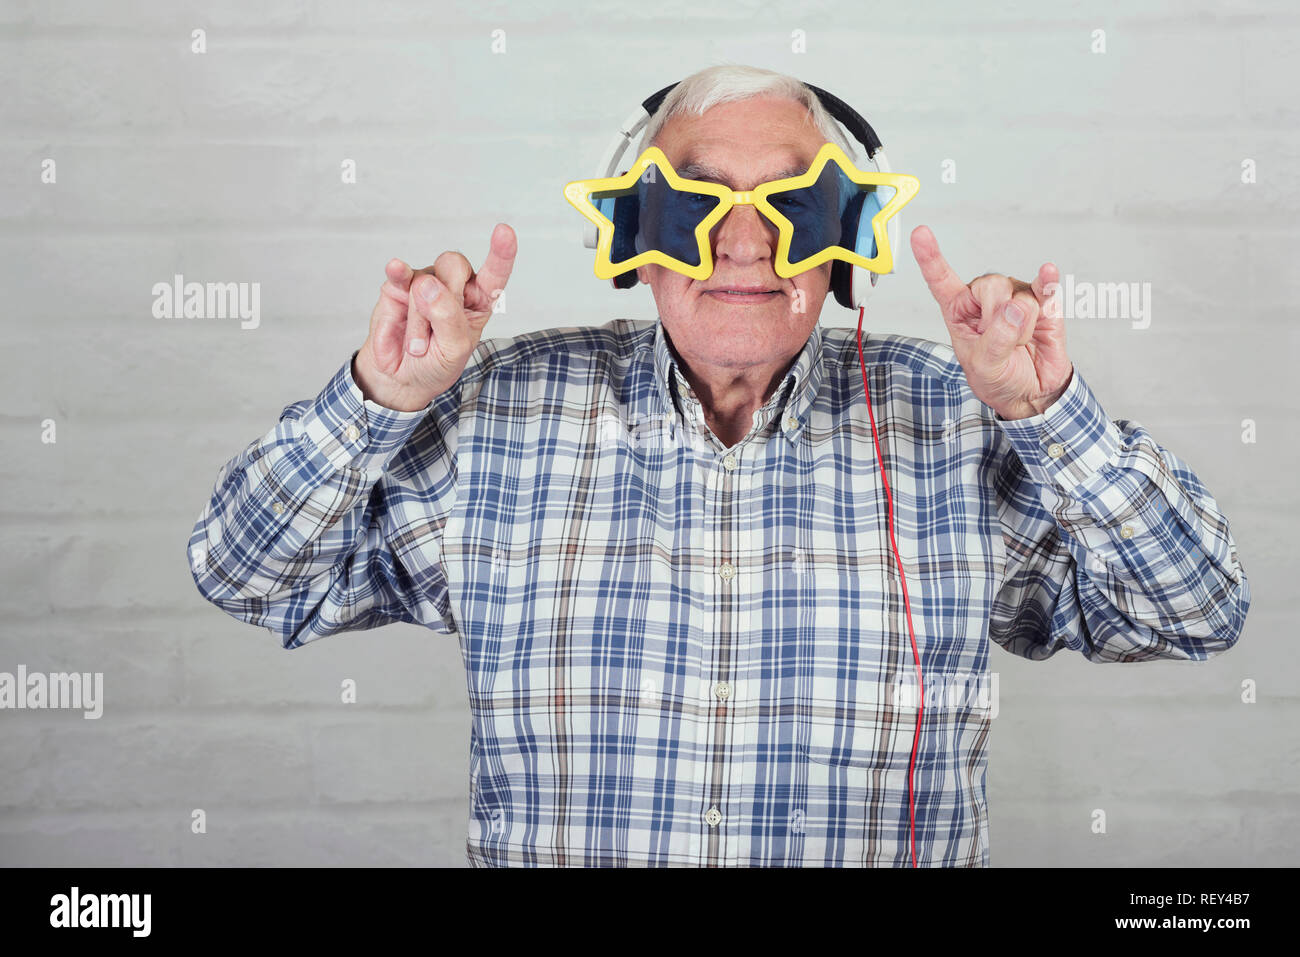 Ältere Menschen mit Kopfhörern und lustigen Sonnenbrille auf Stein Hintergrund Stockfoto